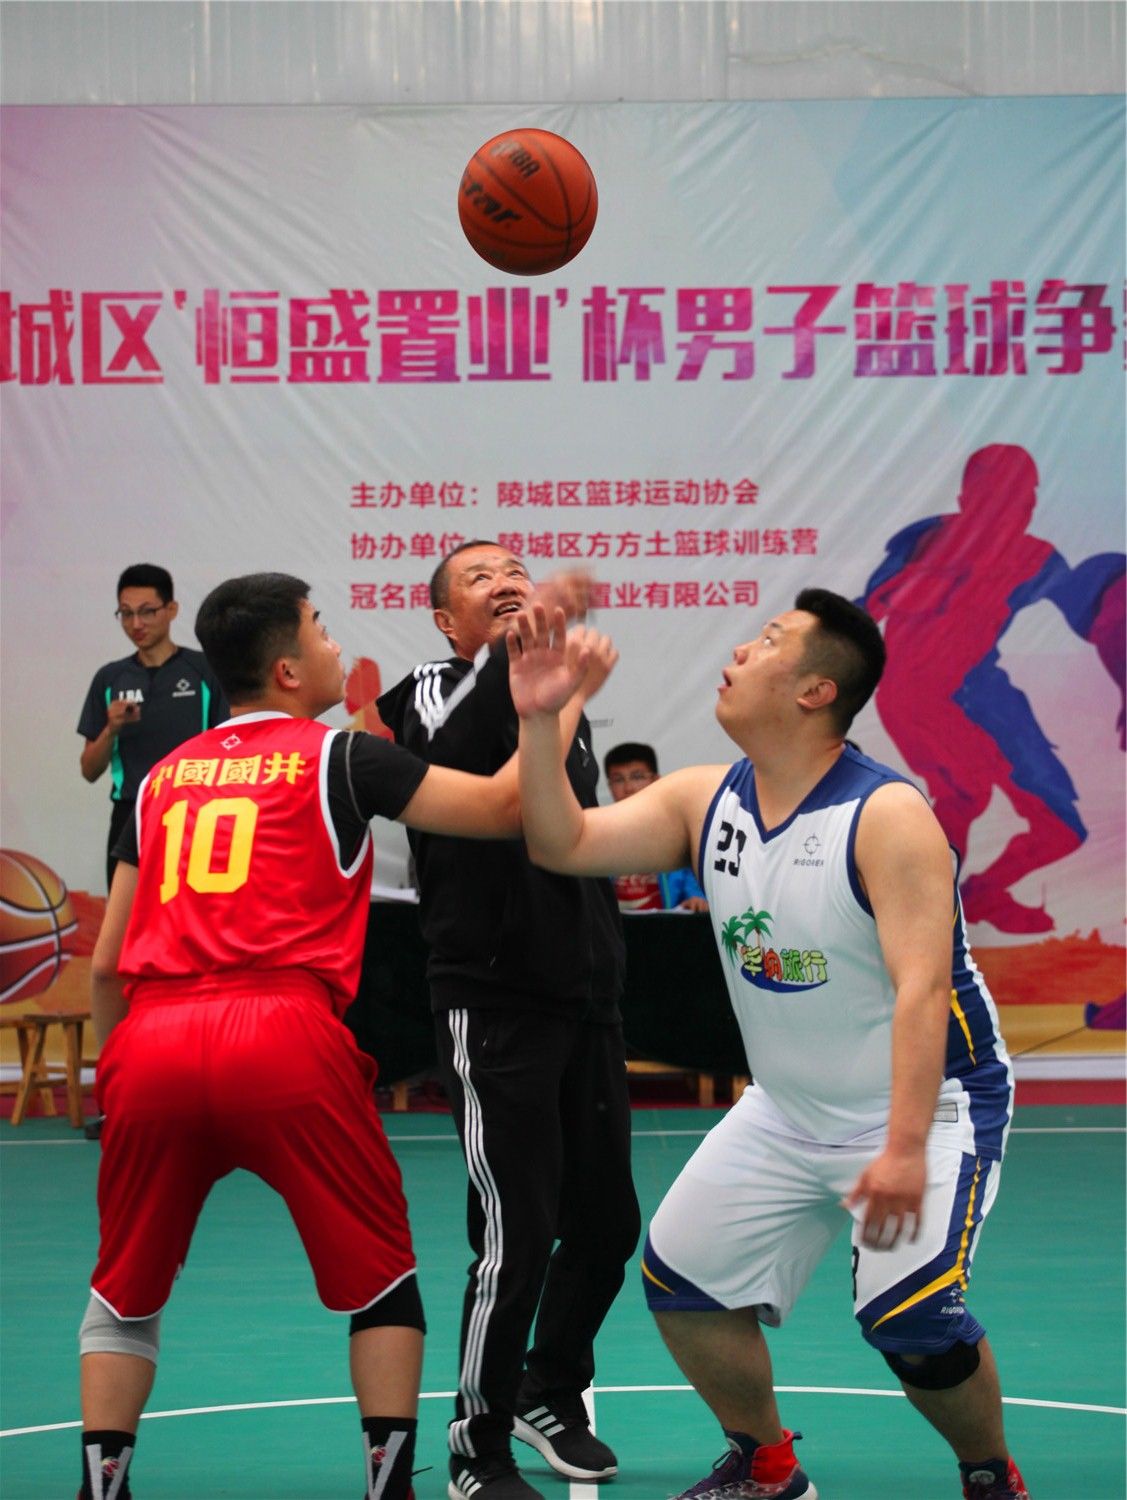 陵城区恒盛置业杯男子篮球争霸赛在方方土篮